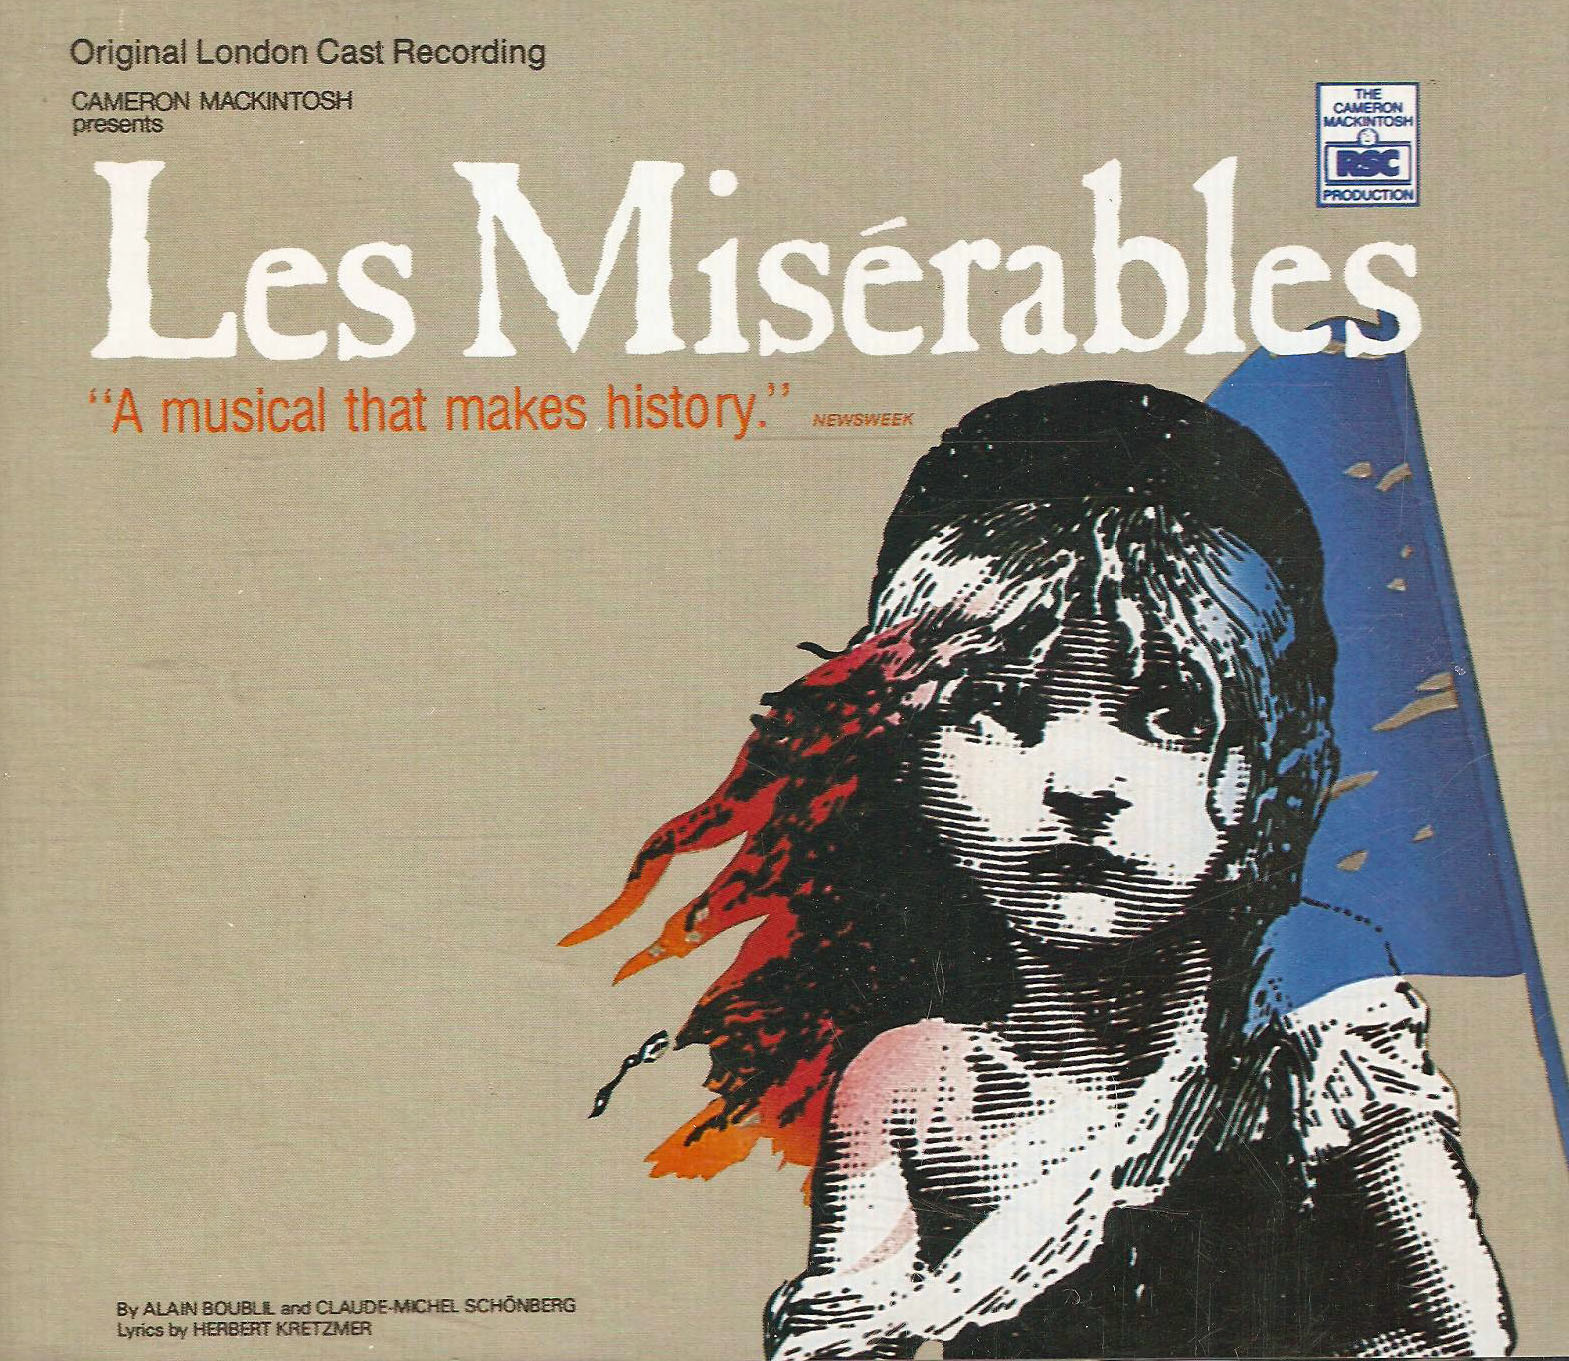 Les Miserables - London Cast Recording 1985 FLAC - Kitlope